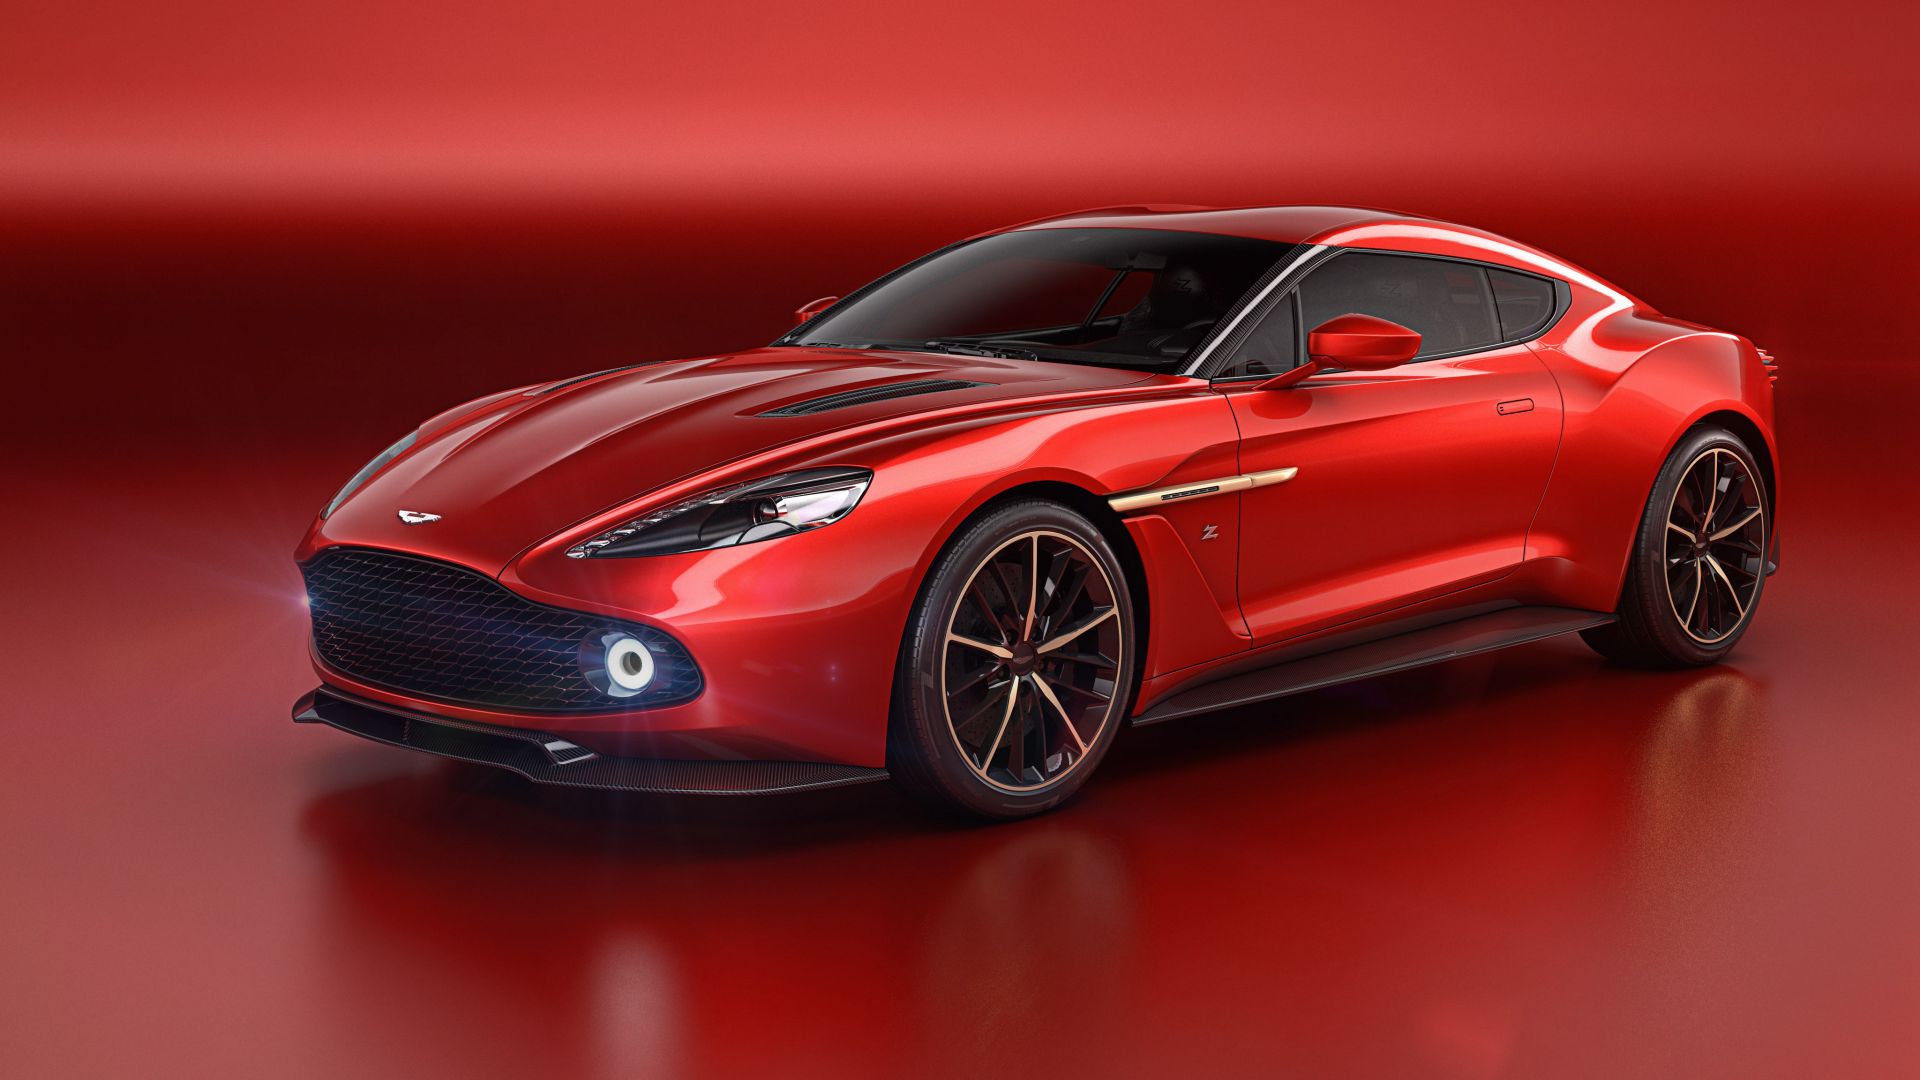 Aston Martin Vanquish Zagato, red, supercar, Zagato (horizontal)